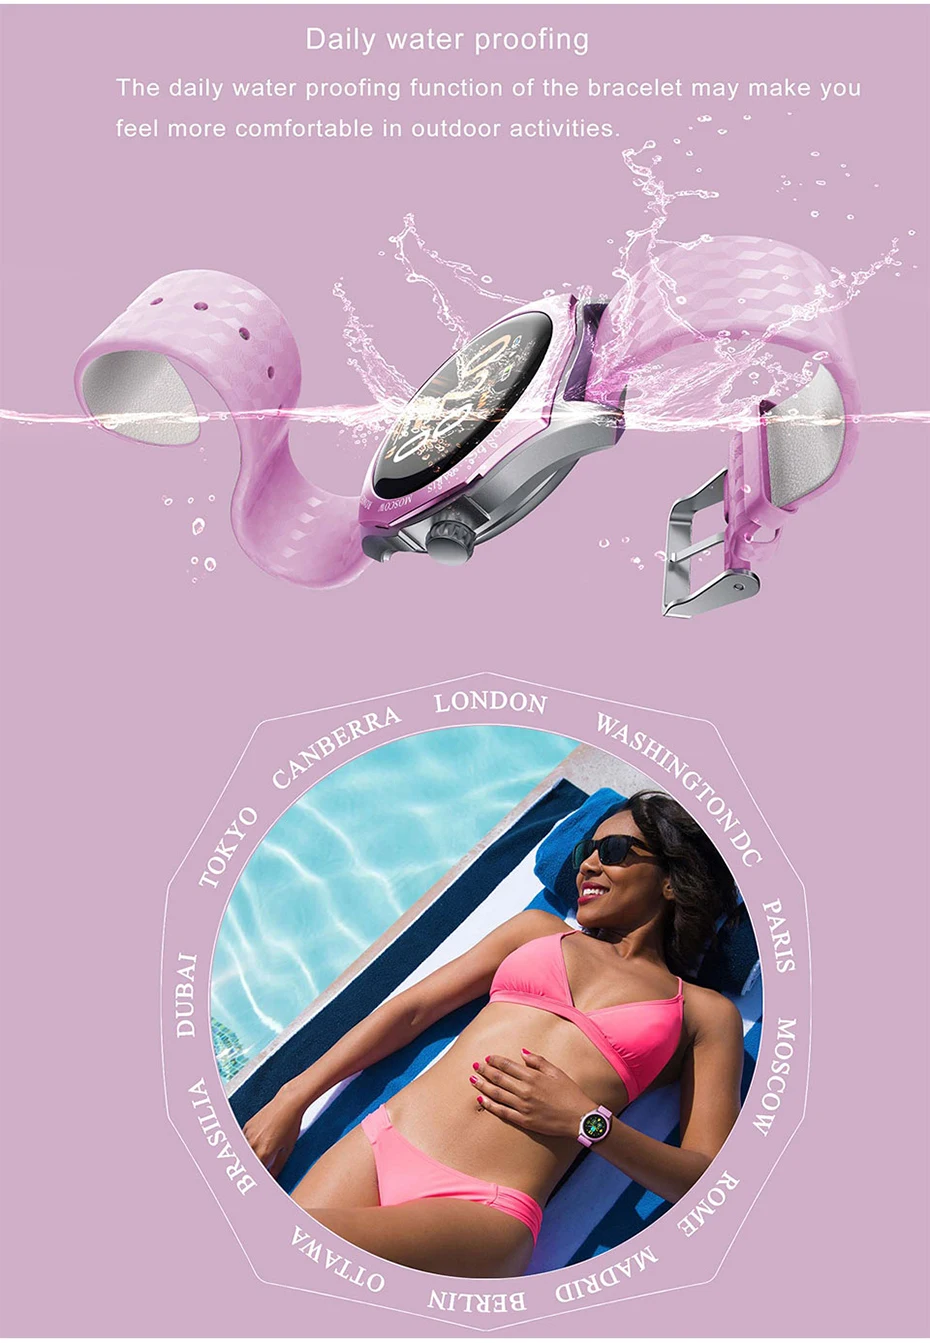 SCOMAS модные женские туфли Смарт часы 1,2" сенсорный экран сердечного ритма крови Давление монитор женский Функция Smartwatch для iOS и Android